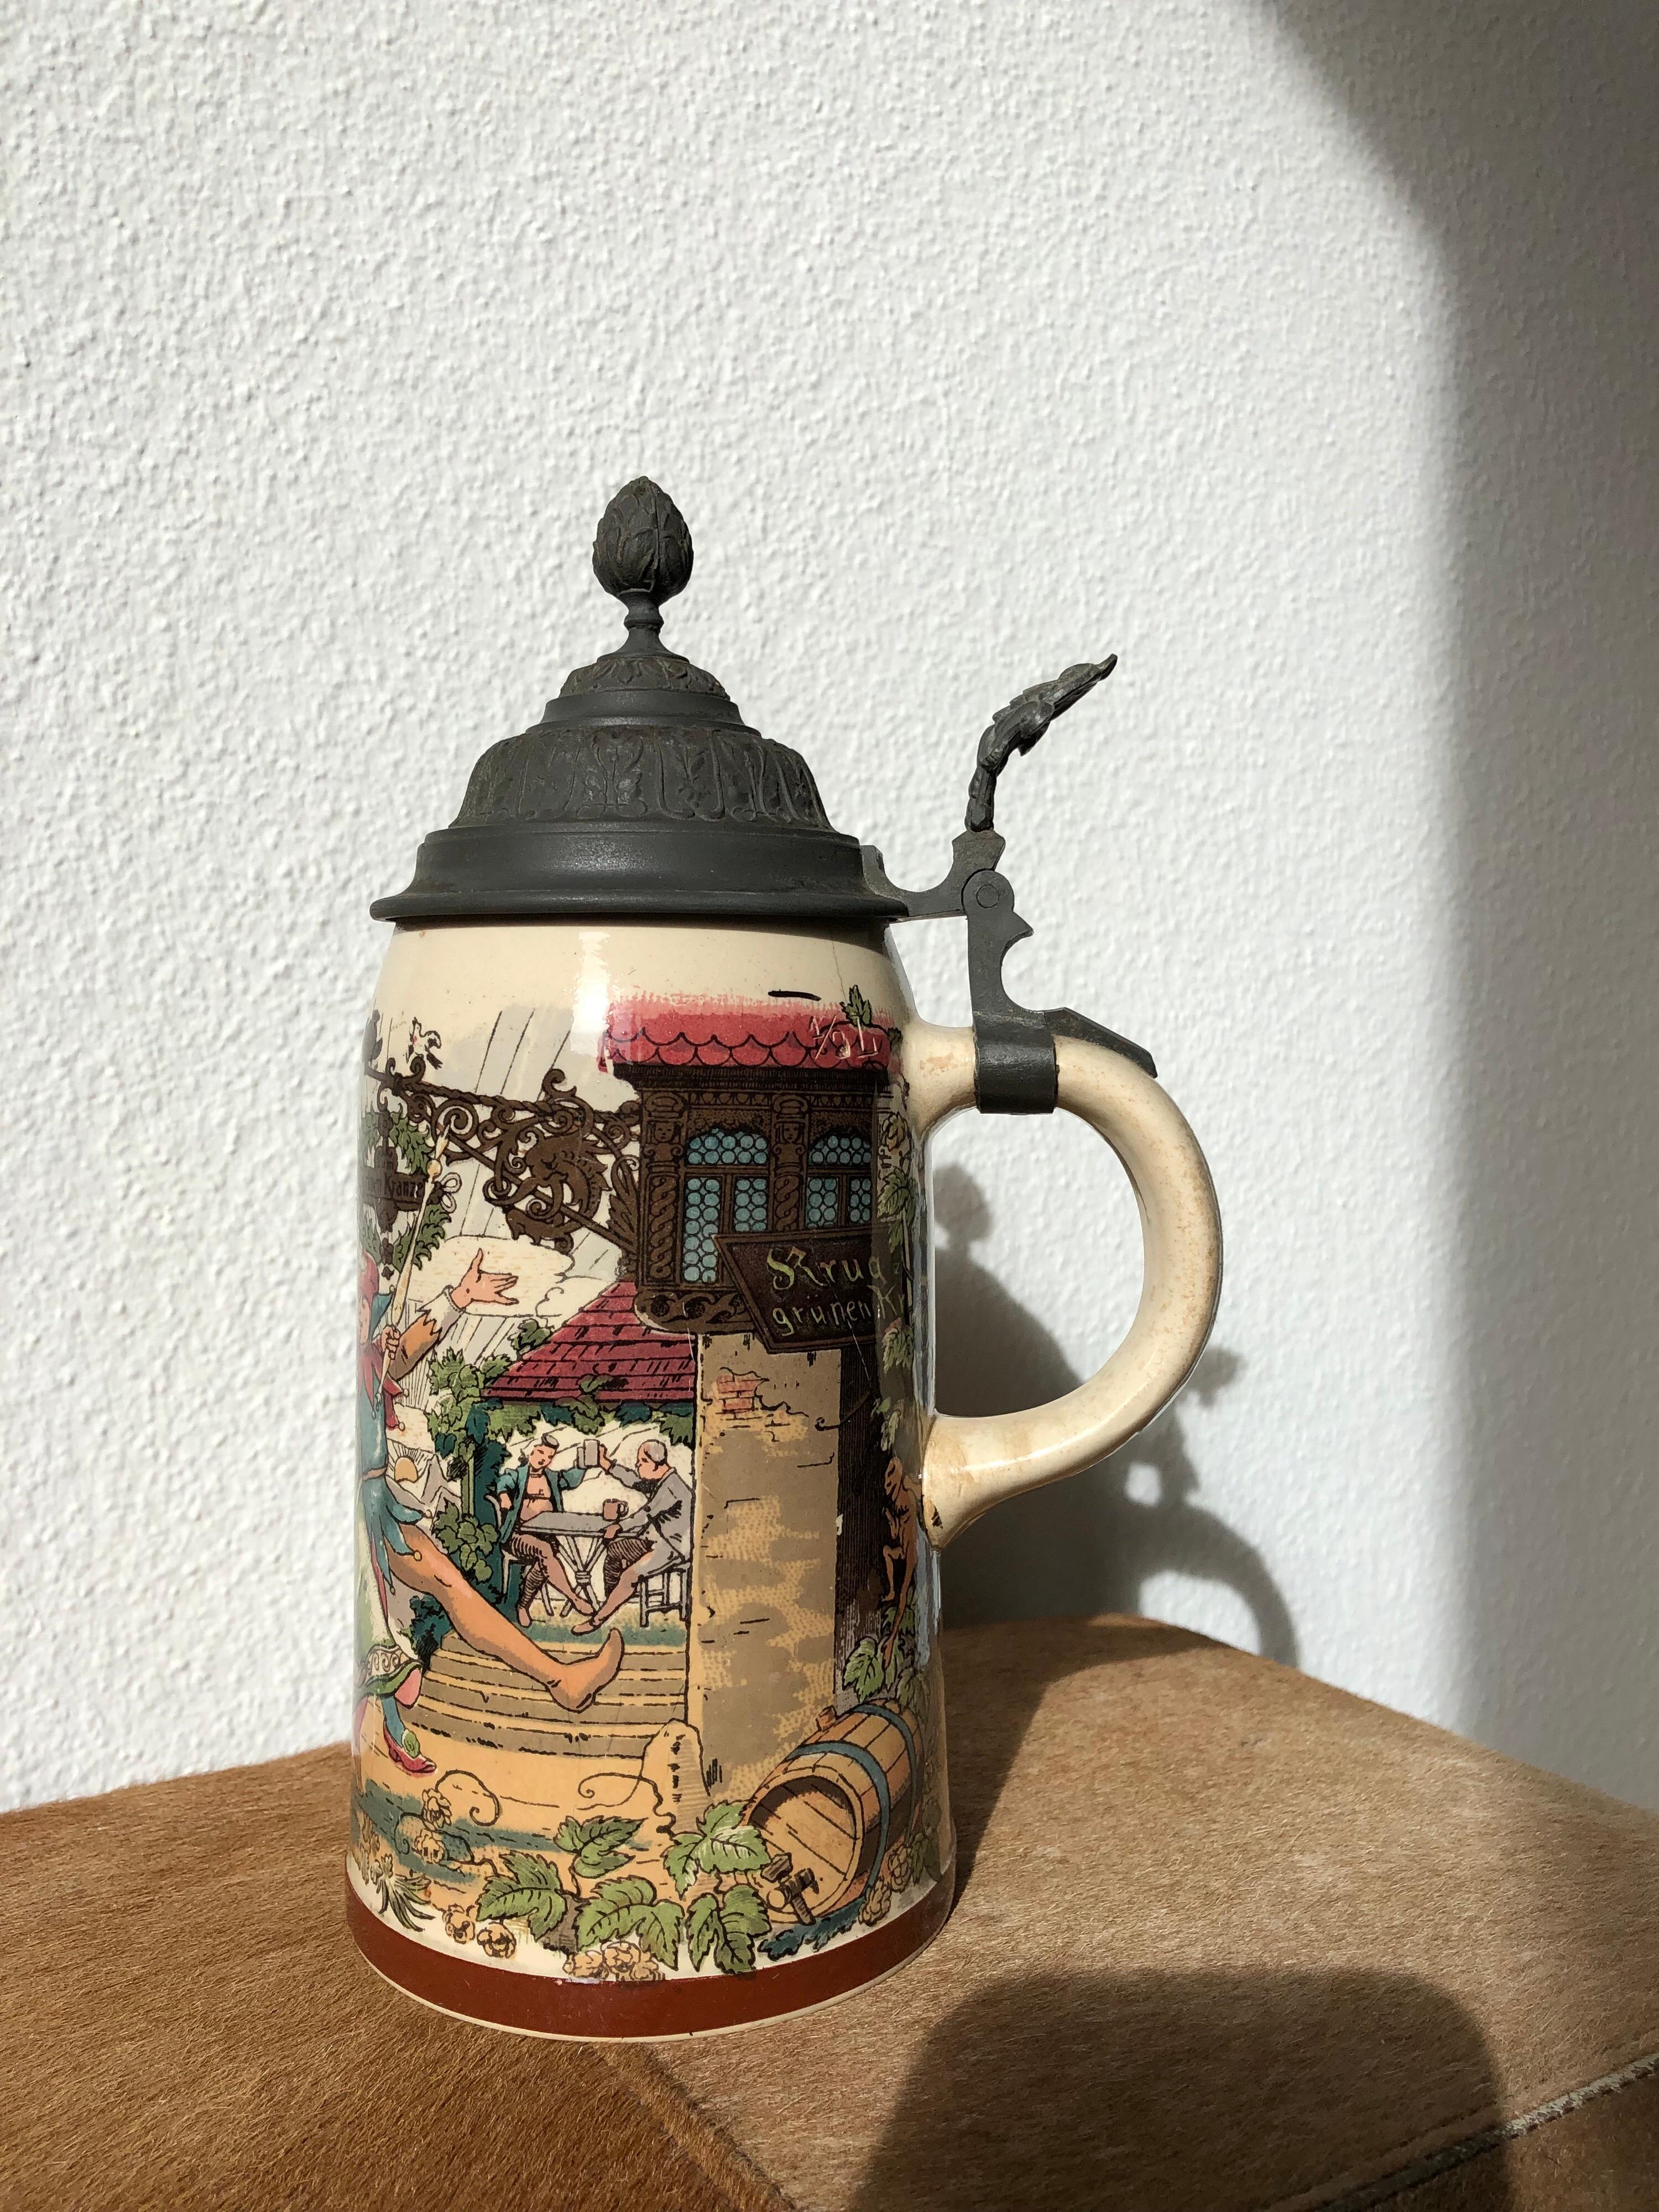 German Beer Stein Stoneware 1/2 Liter Mug Original Pewter Hinge Dancing Drinking Scene